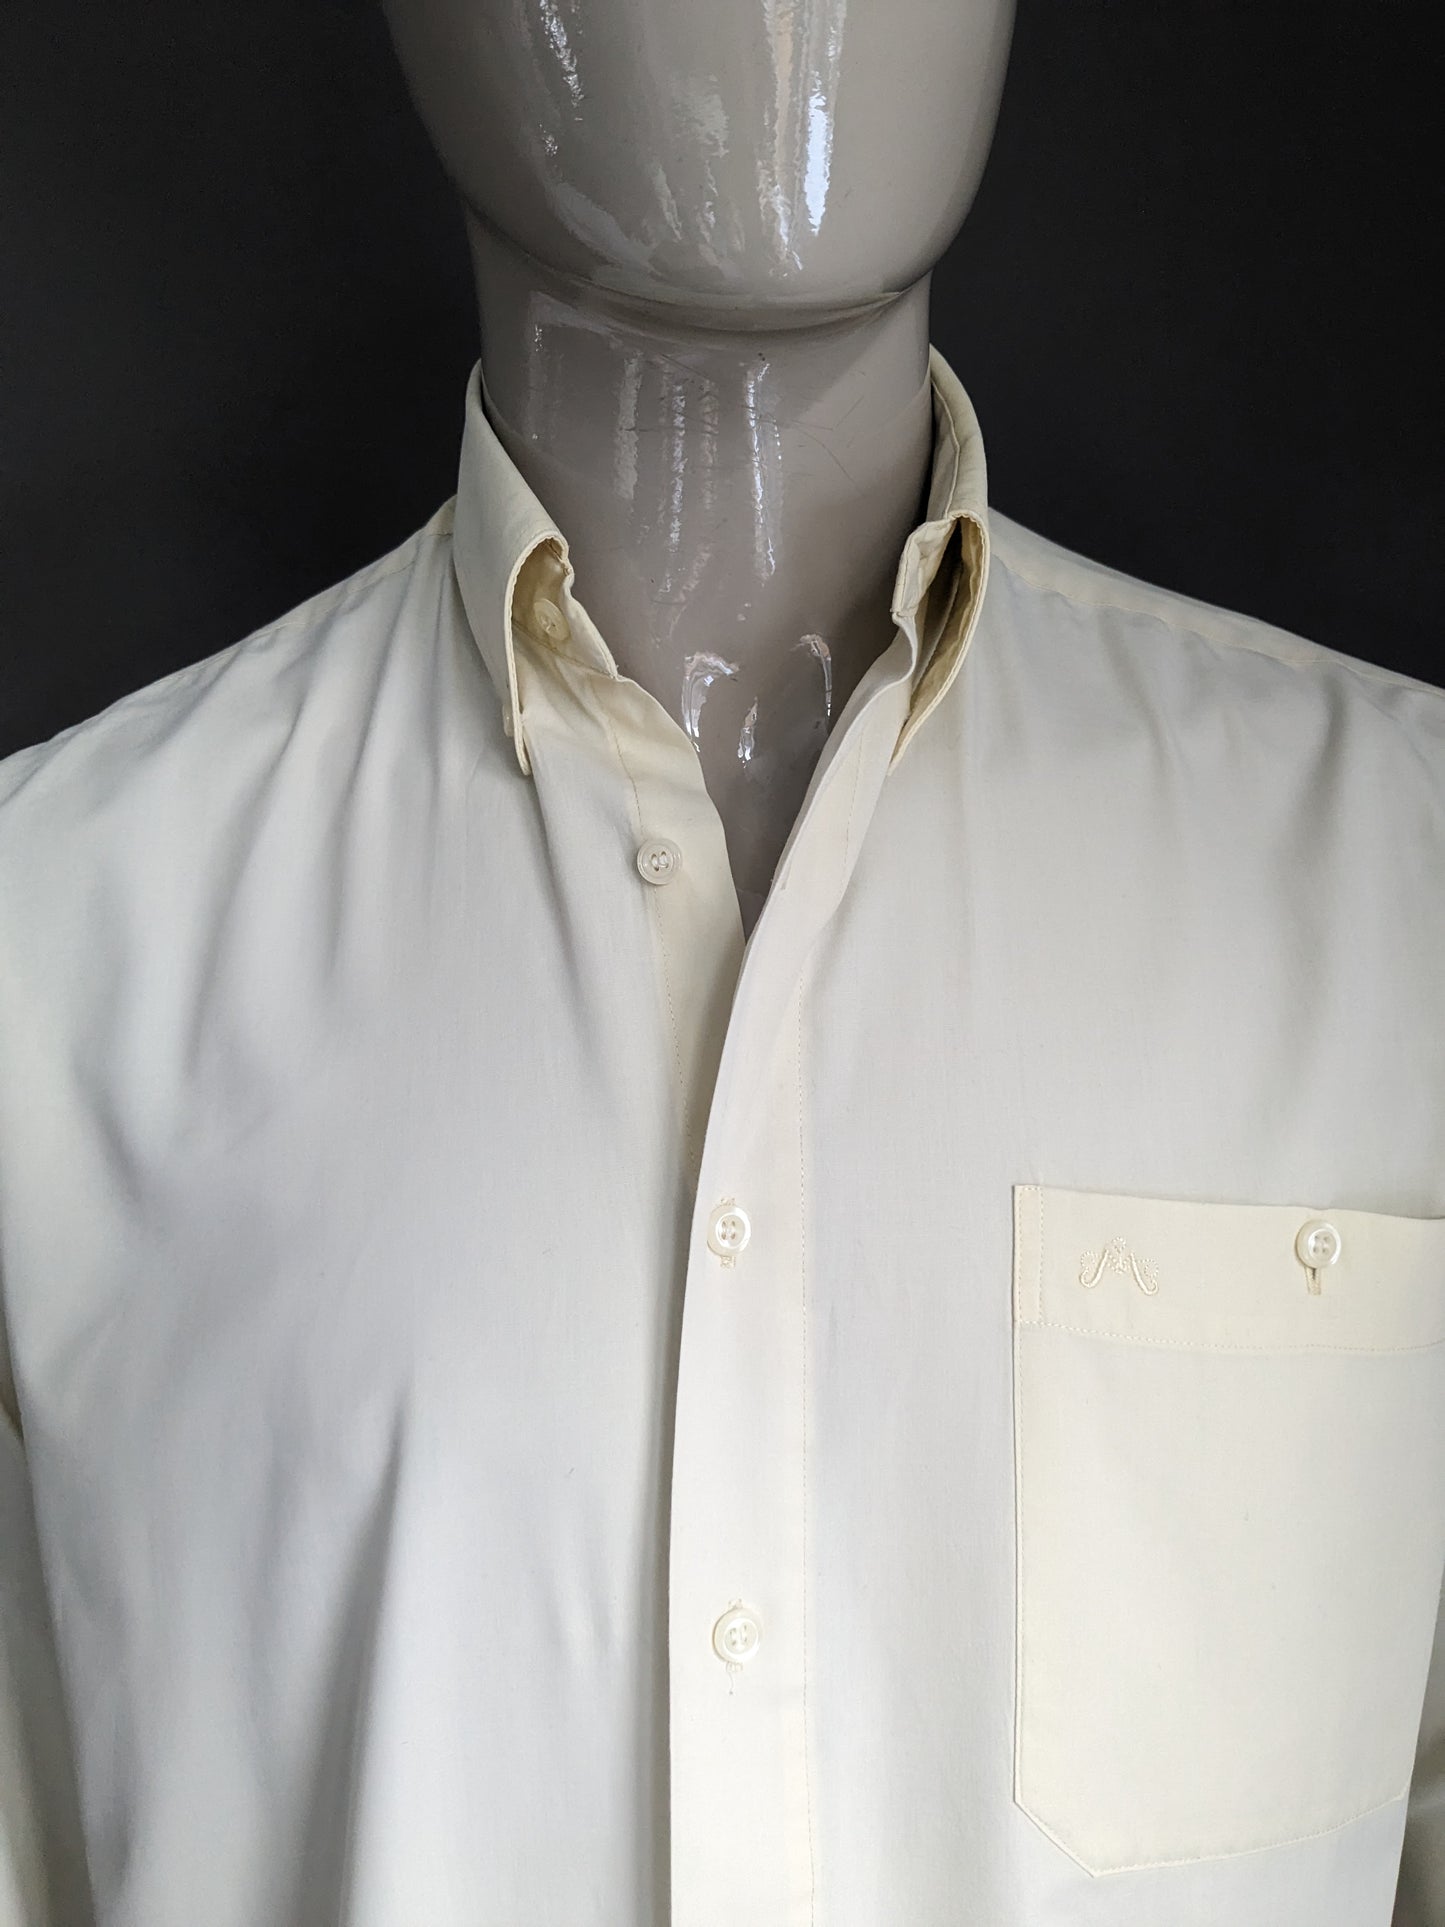 Marcello camiseta de Vintage 70 con cuello de puntos. Color amarillo claro. Tamaño xl.